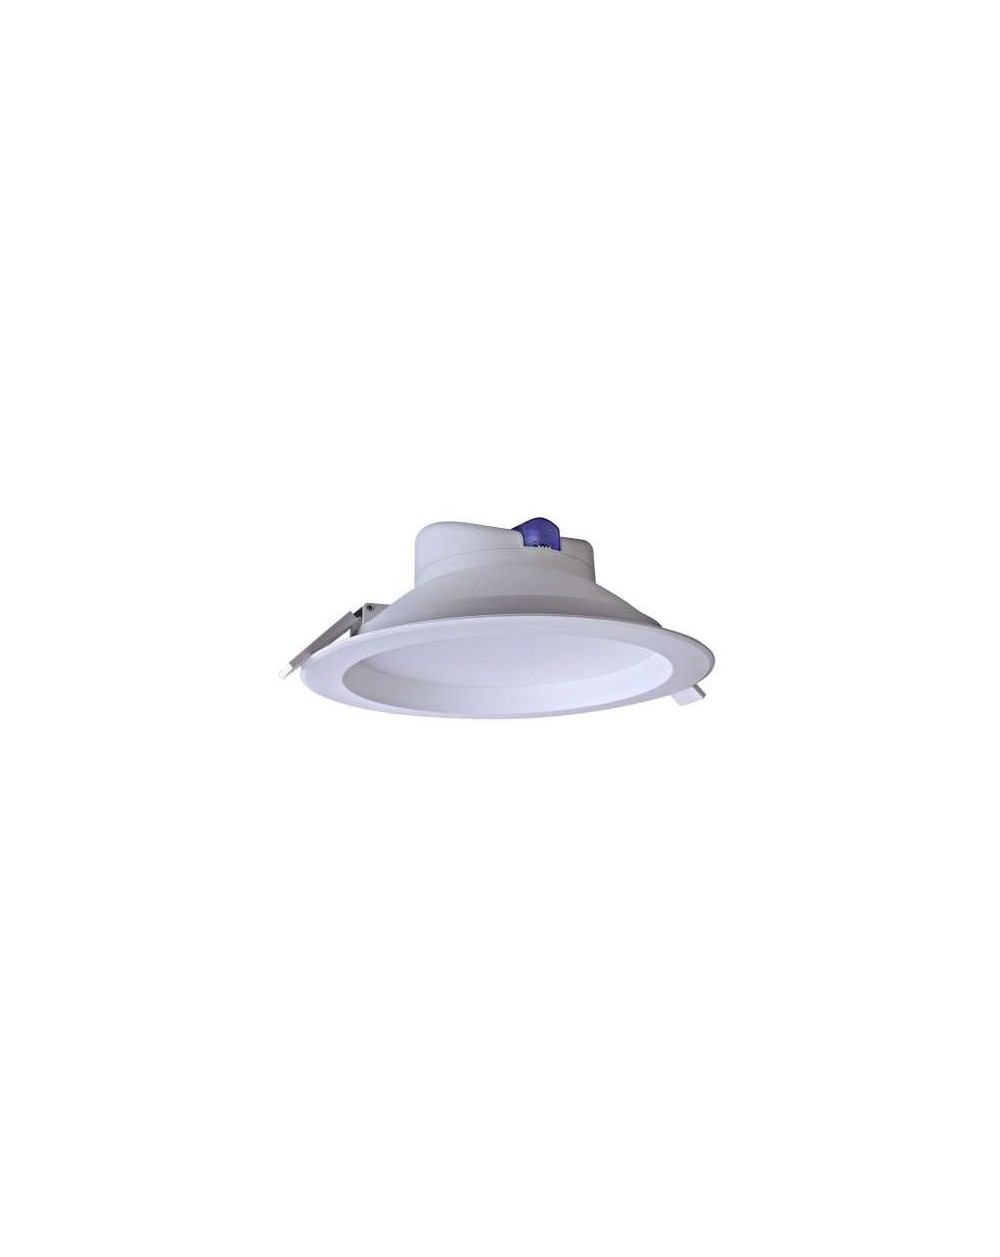 Lampa sufitowa ECOEYE 25W WP IP44 - Mistic Lighting oprawa wpuszczana okrągła typu downlight do zabudowy w sufitach biała   